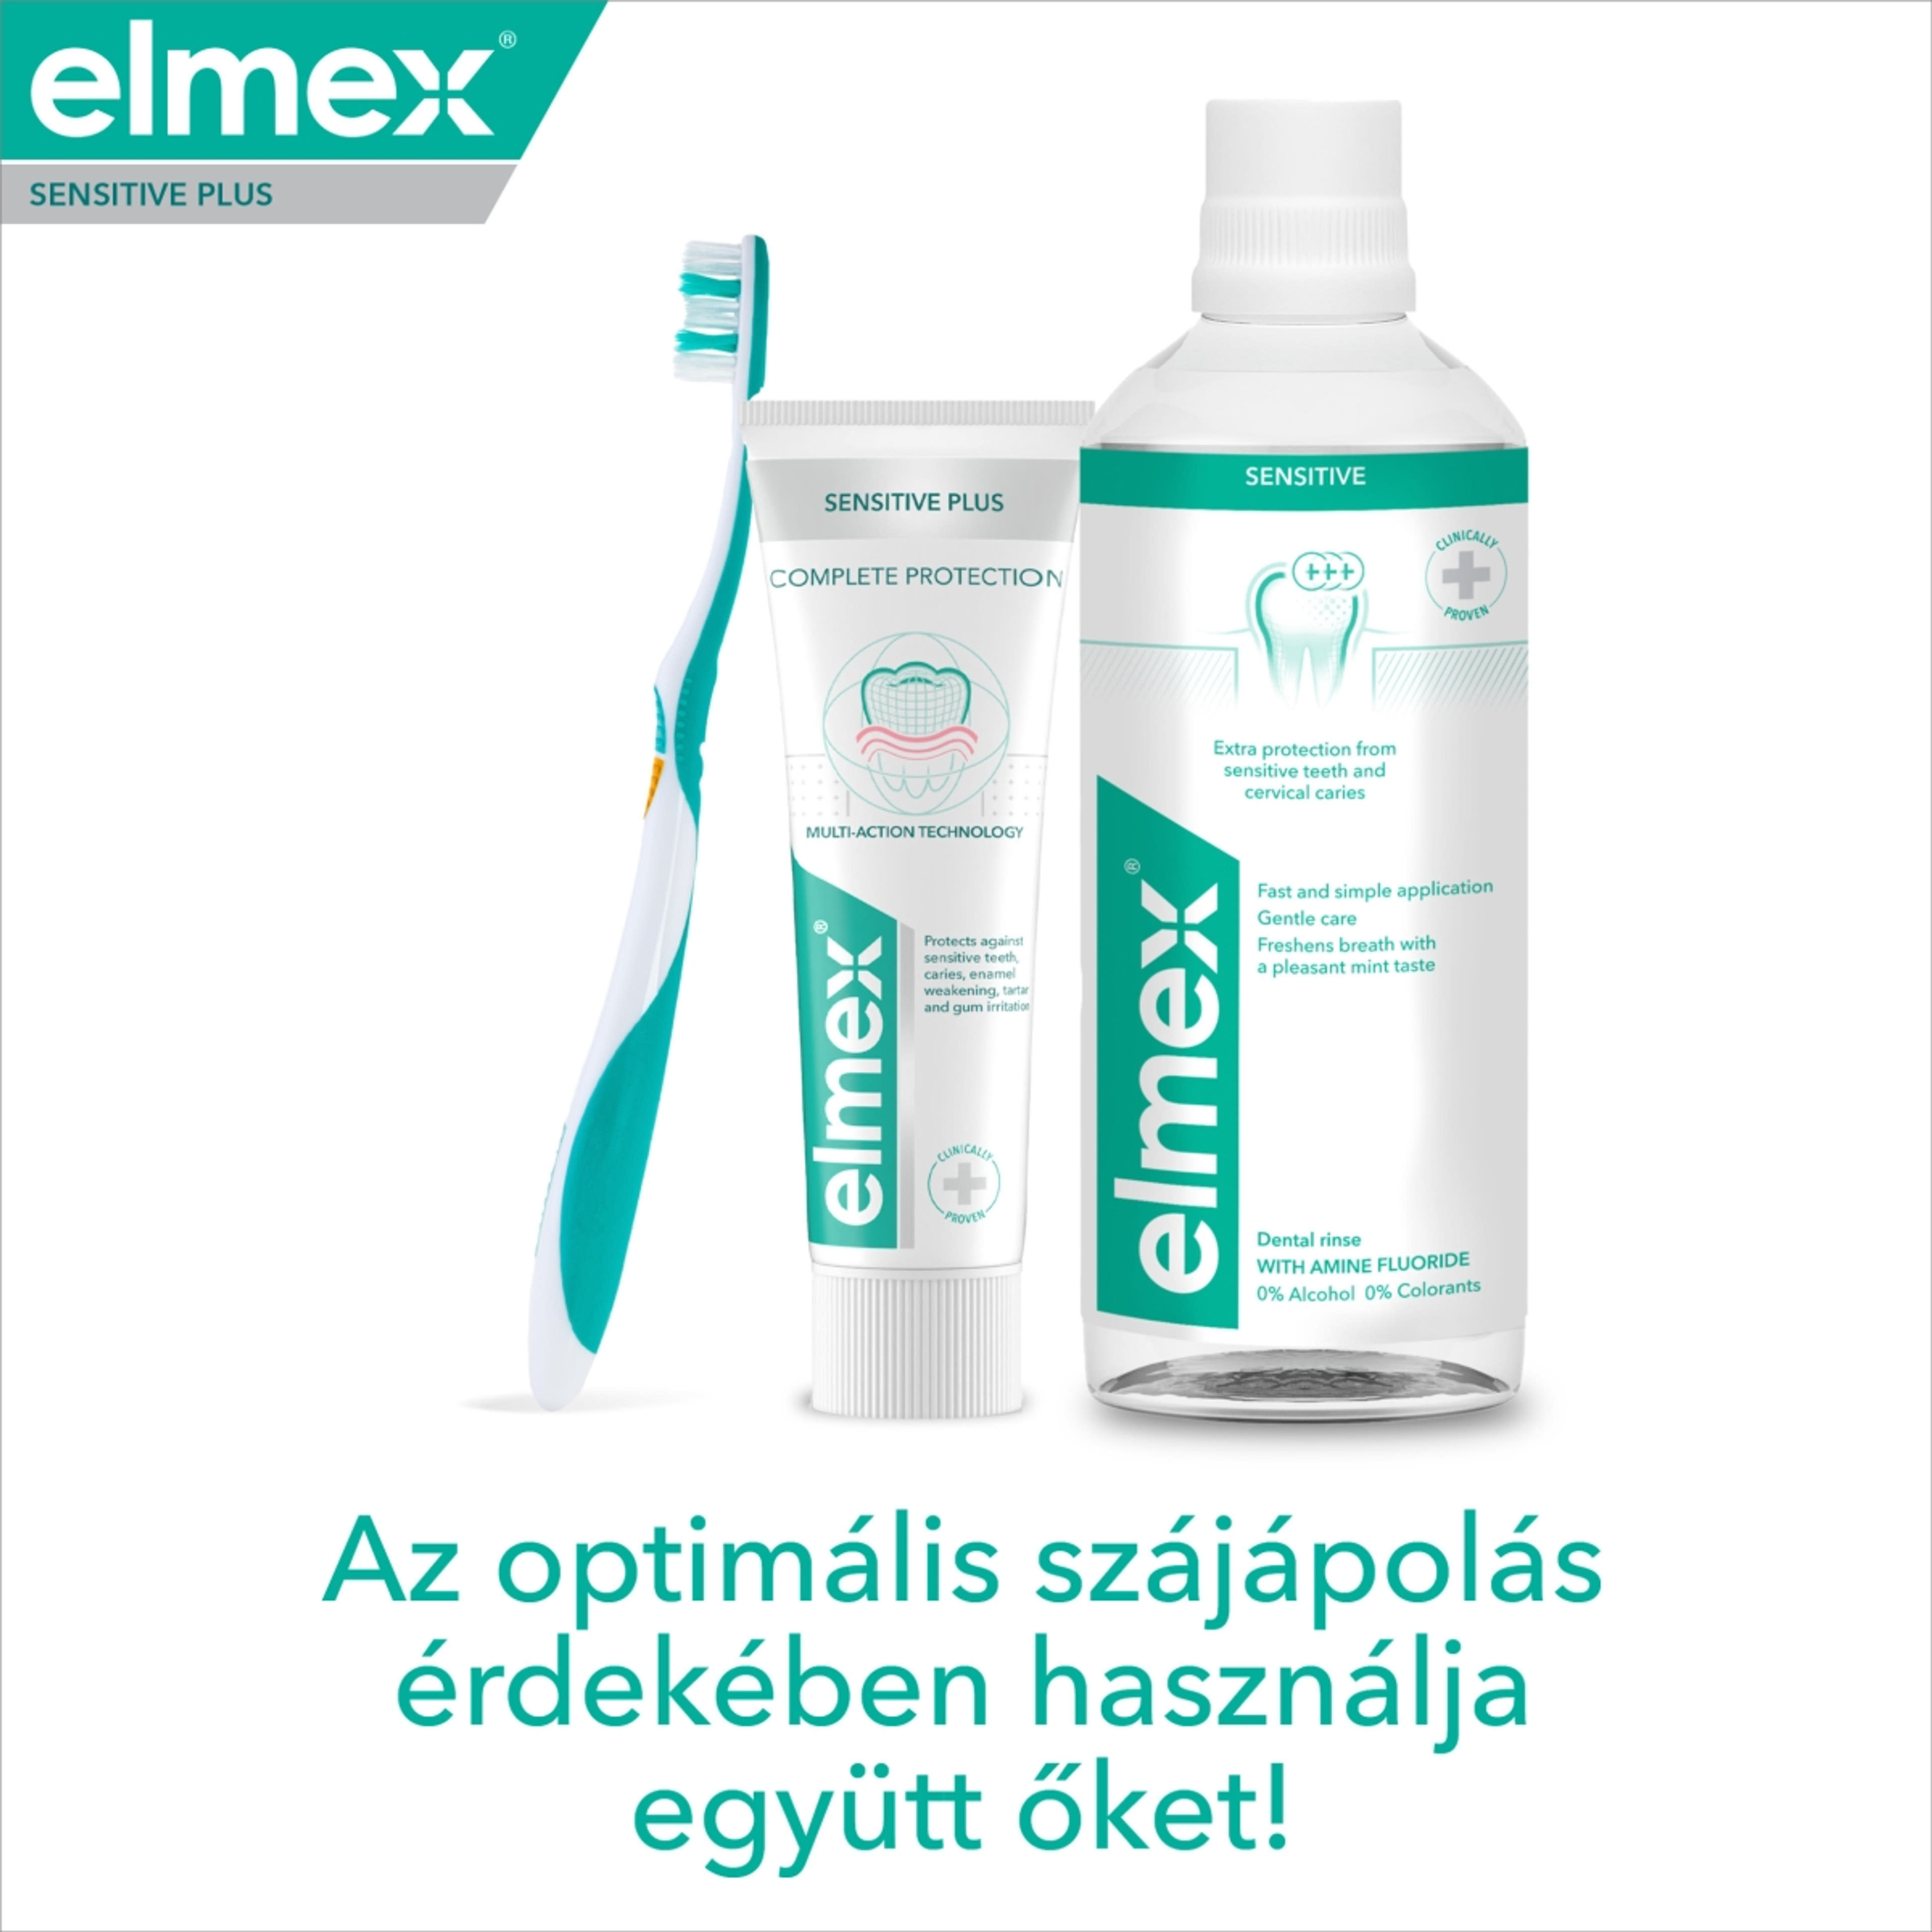 Elmex Sensitive Plus Complete Protection fogkrém - 75 ml-8